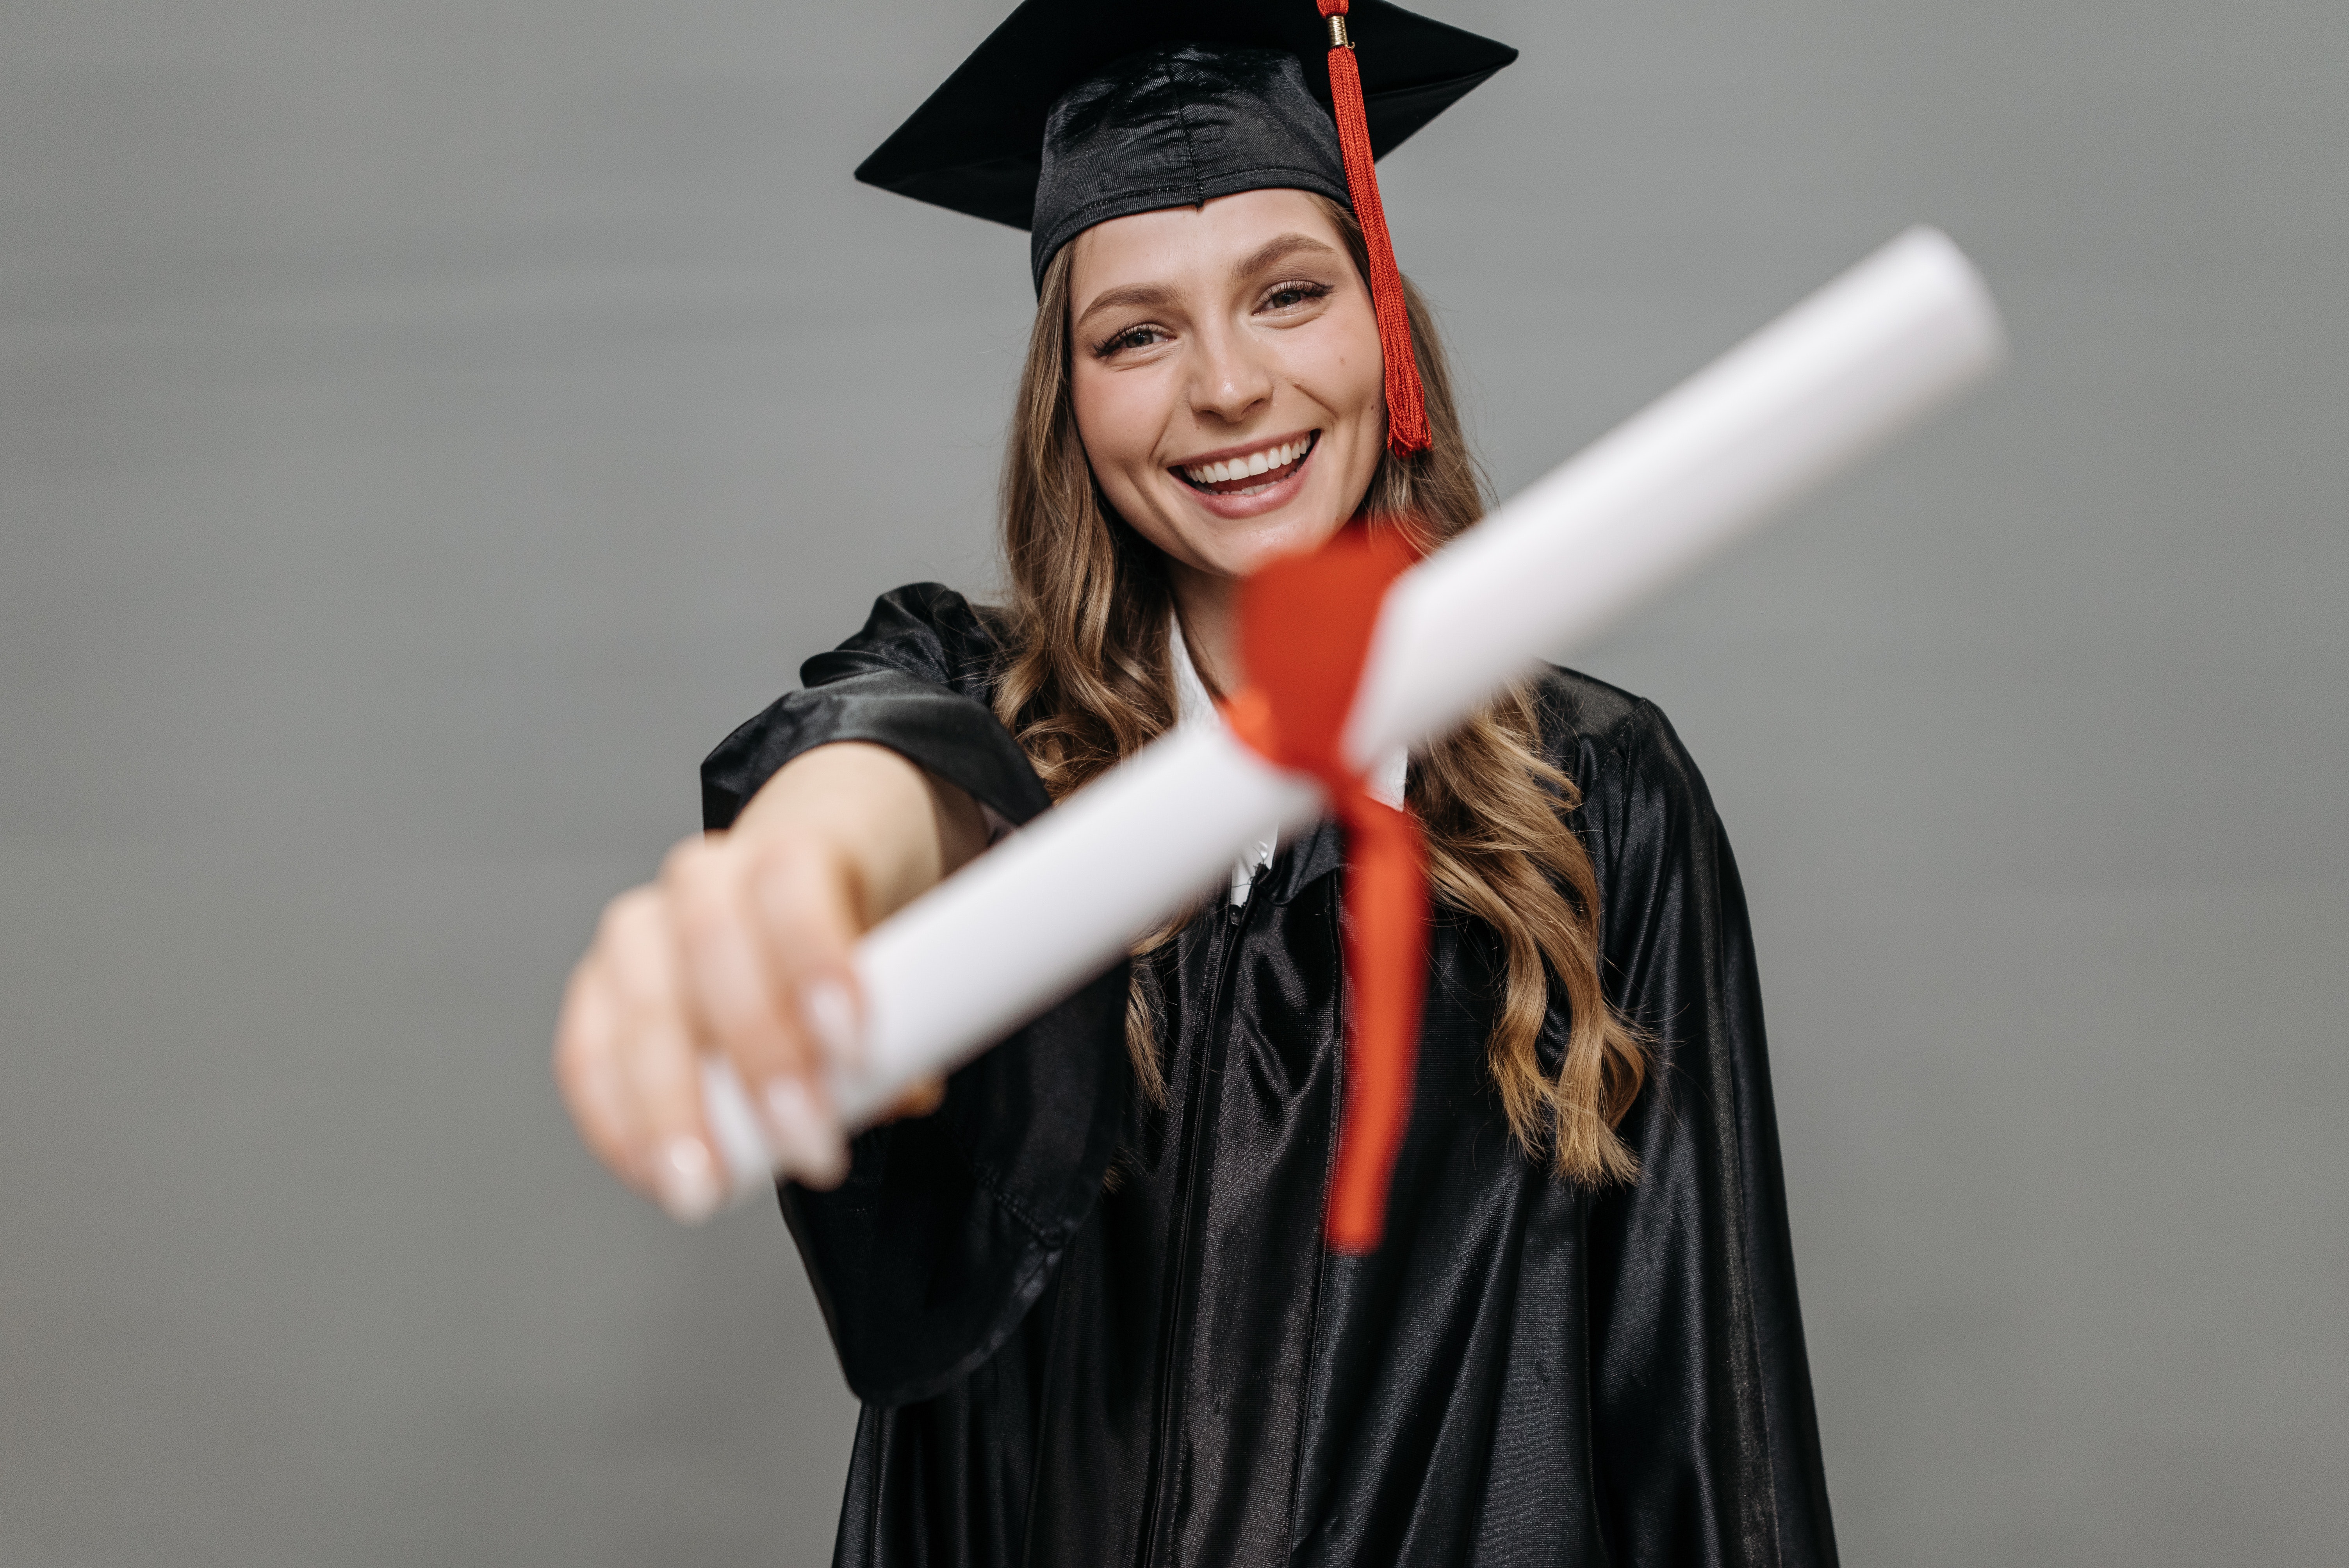 Na foto, uma menina mostra seu diploma para a câmera. Ela está de beca, com capelo e está sorrindo.